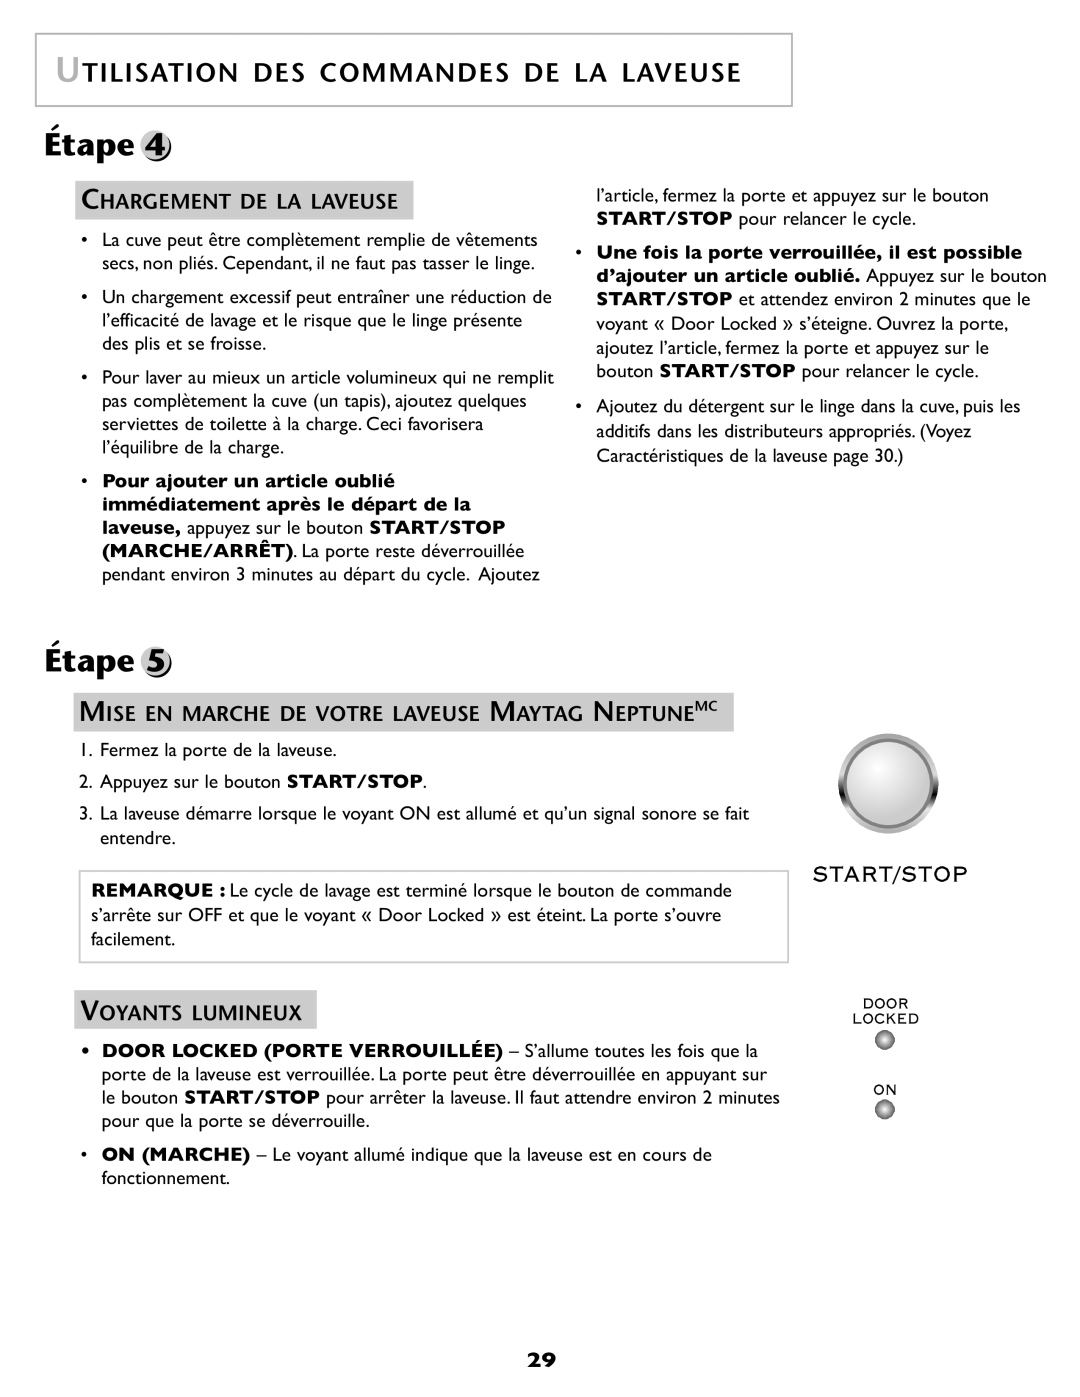 Maytag SL-3 Chargement De La Laveuse, Voyants Lumineux, Étape, Utilisation Des Commandes De La Laveuse 